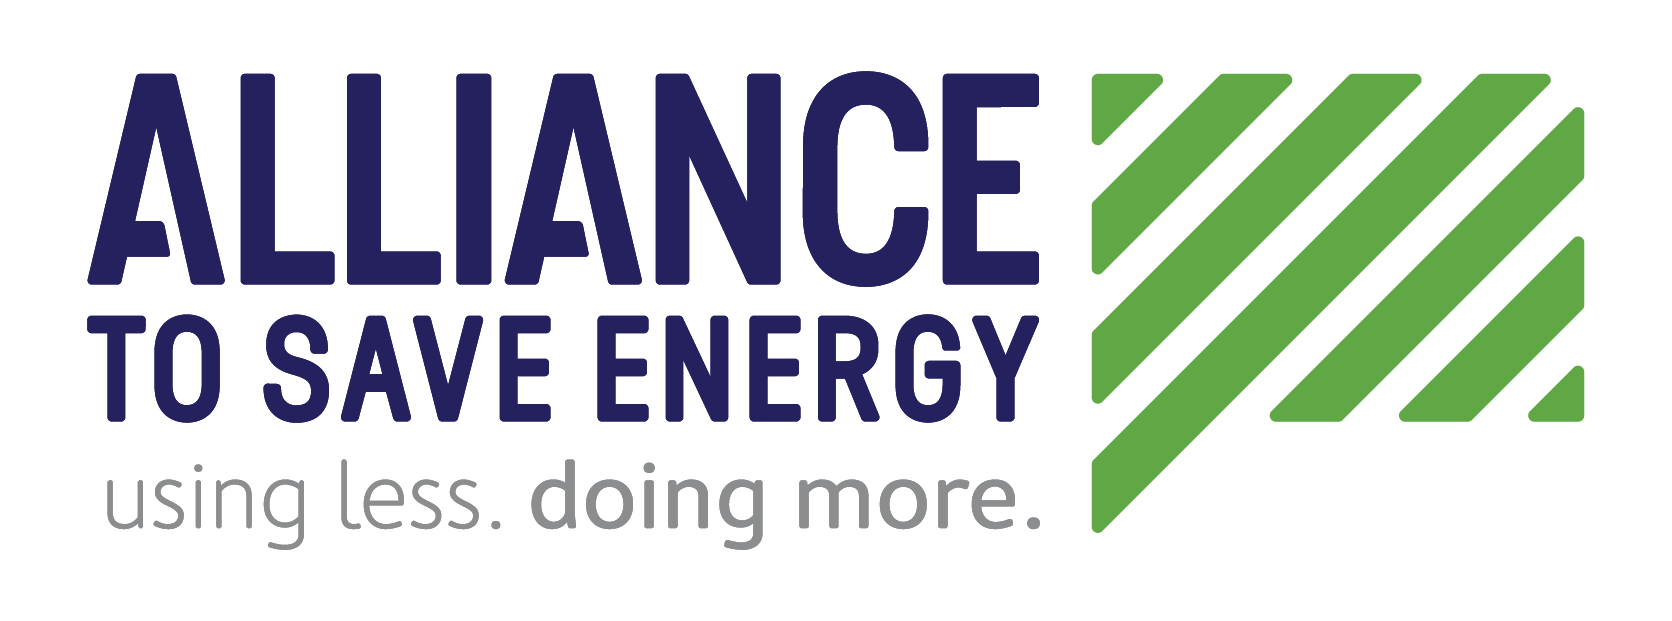 Energy Efficiency Conferences 2019 Efficiency Canada